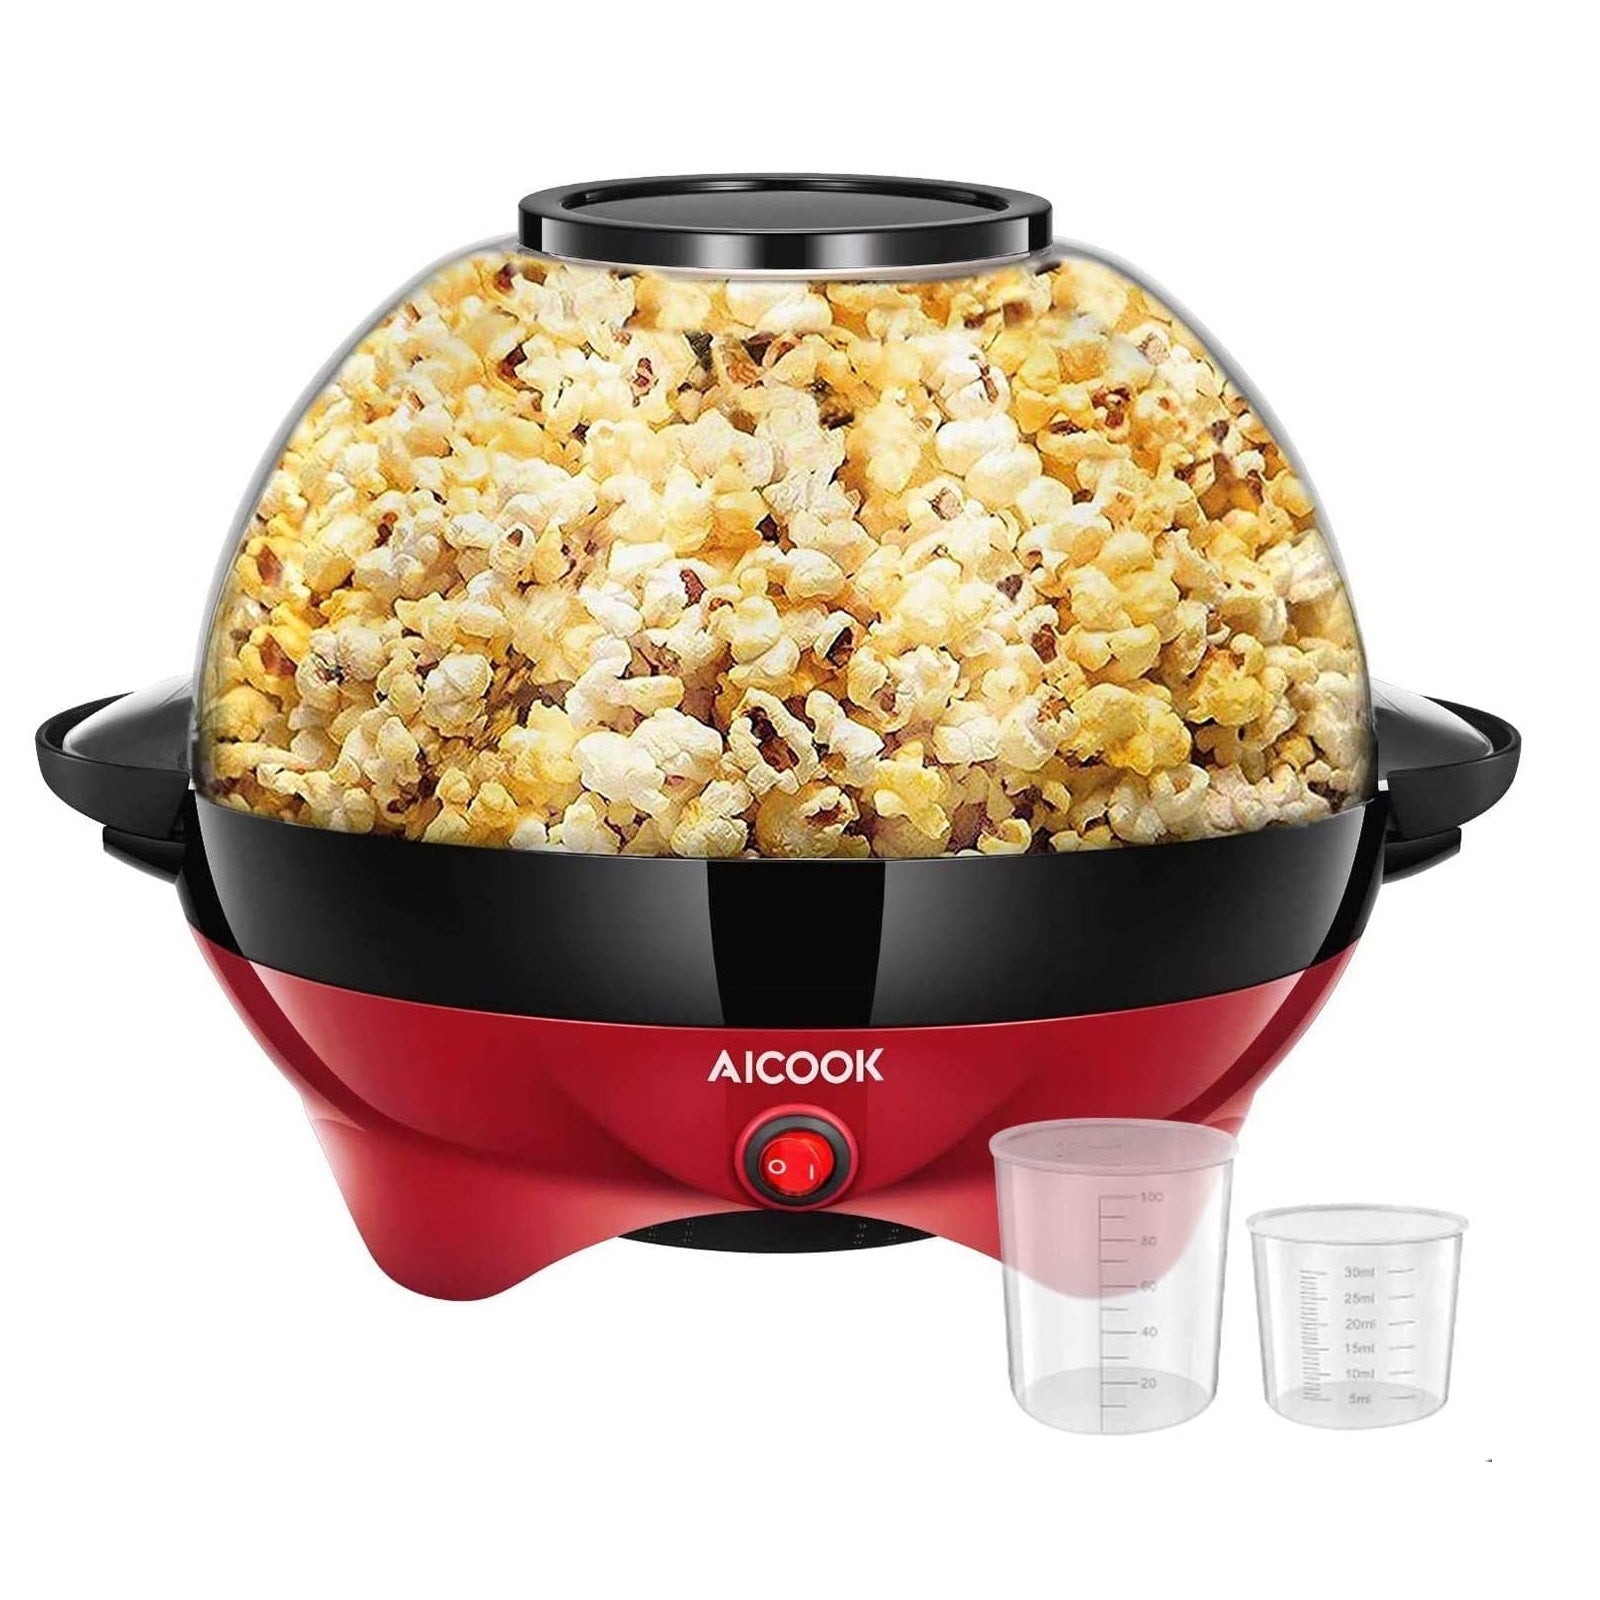 Discontinued EasyPop™ Hot Air Popcorn Maker